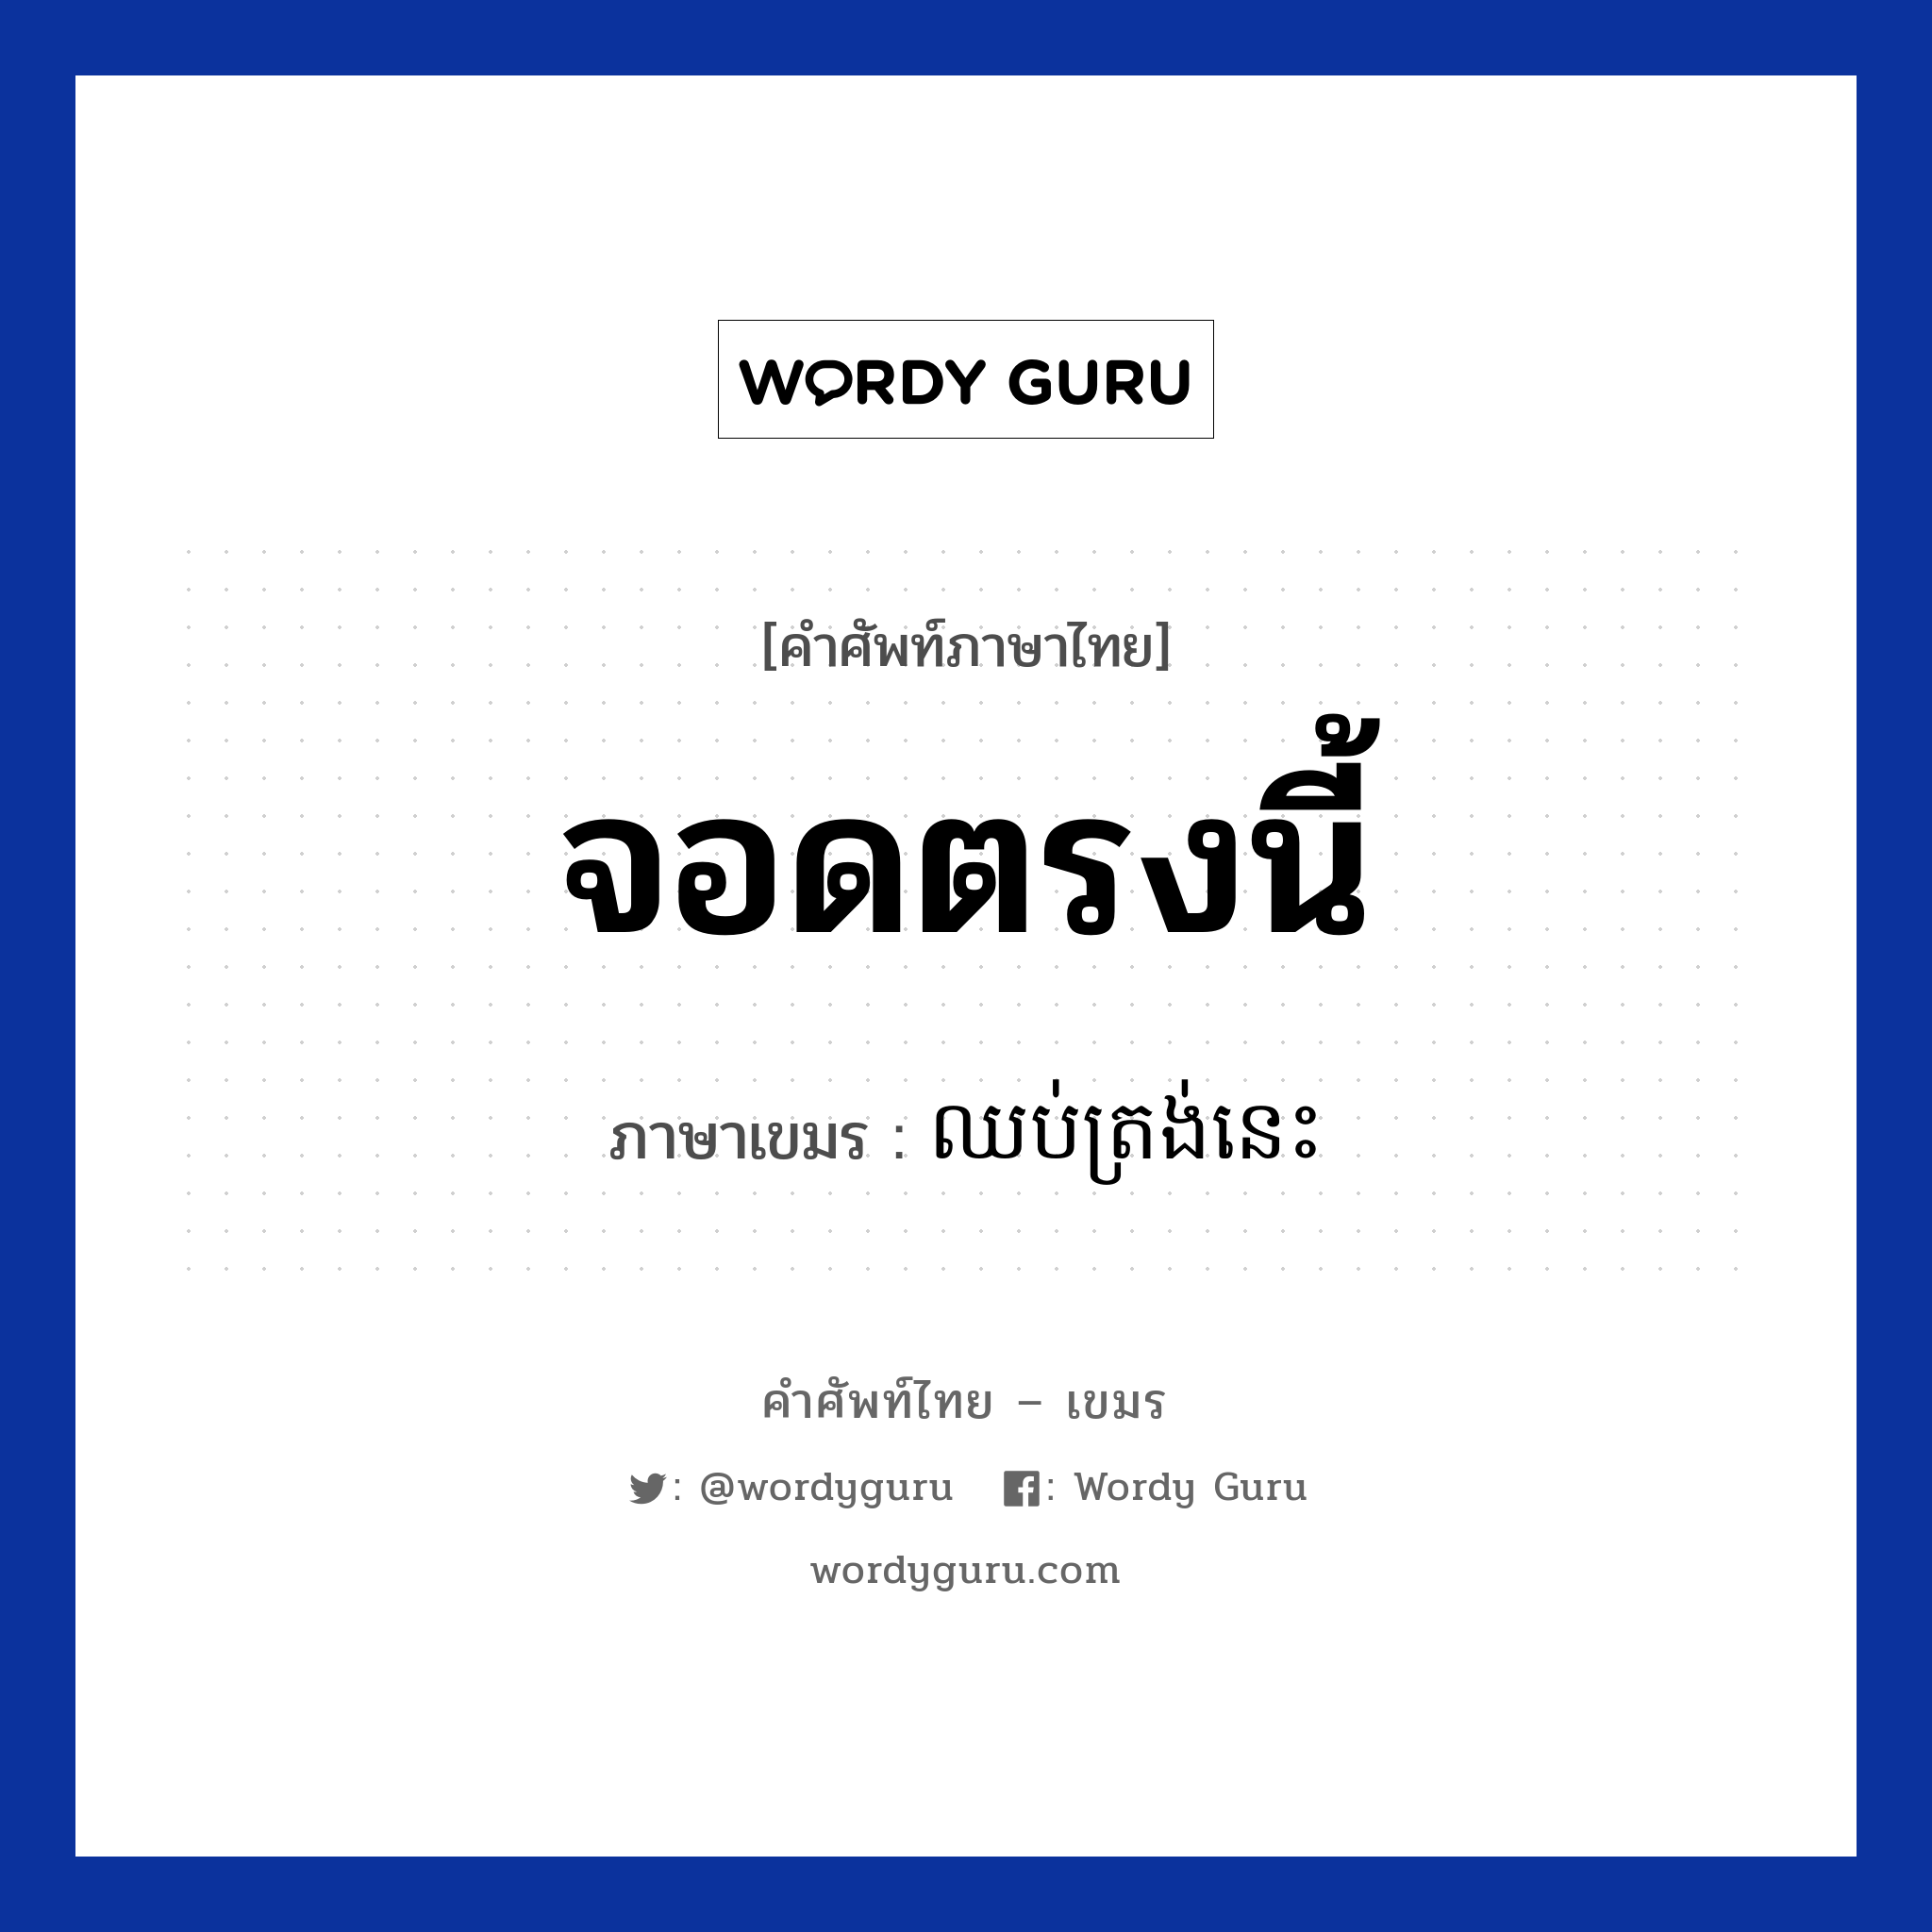 จอดตรงนี้ ภาษาเขมรคืออะไร, คำศัพท์ภาษาไทย - เขมร จอดตรงนี้ ภาษาเขมร ឈប់ត្រង់នេះ หมวด การเดินทาง Chub trong nis หมวด การเดินทาง